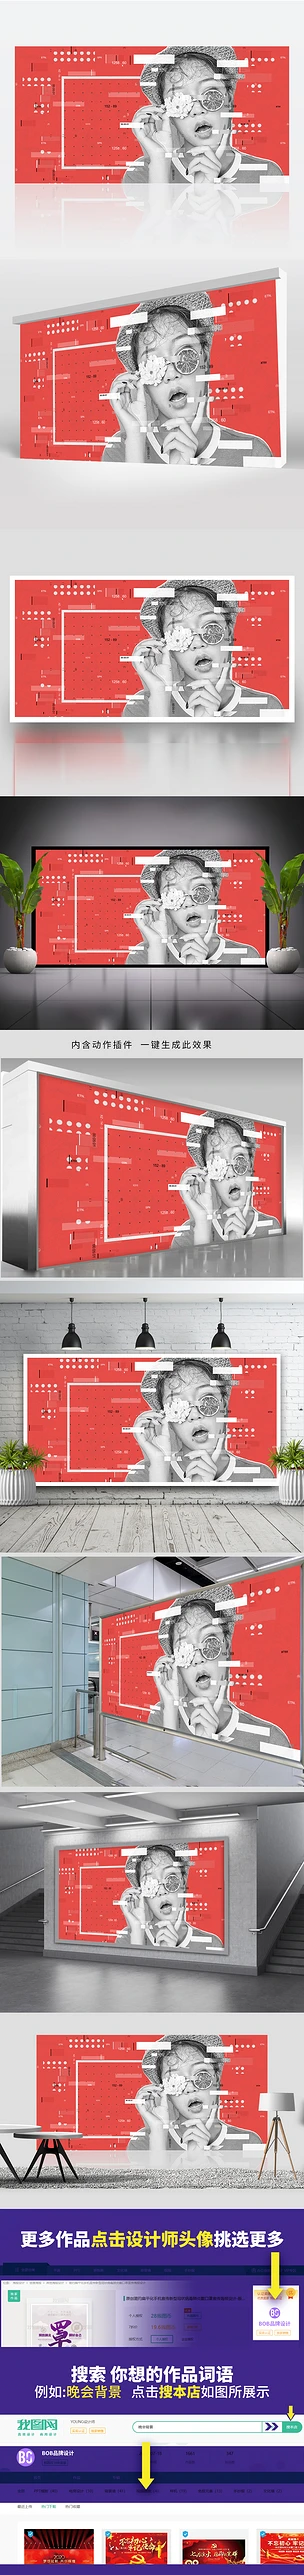 高端创意时尚潮流酒吧人物海报设计PS动作插件